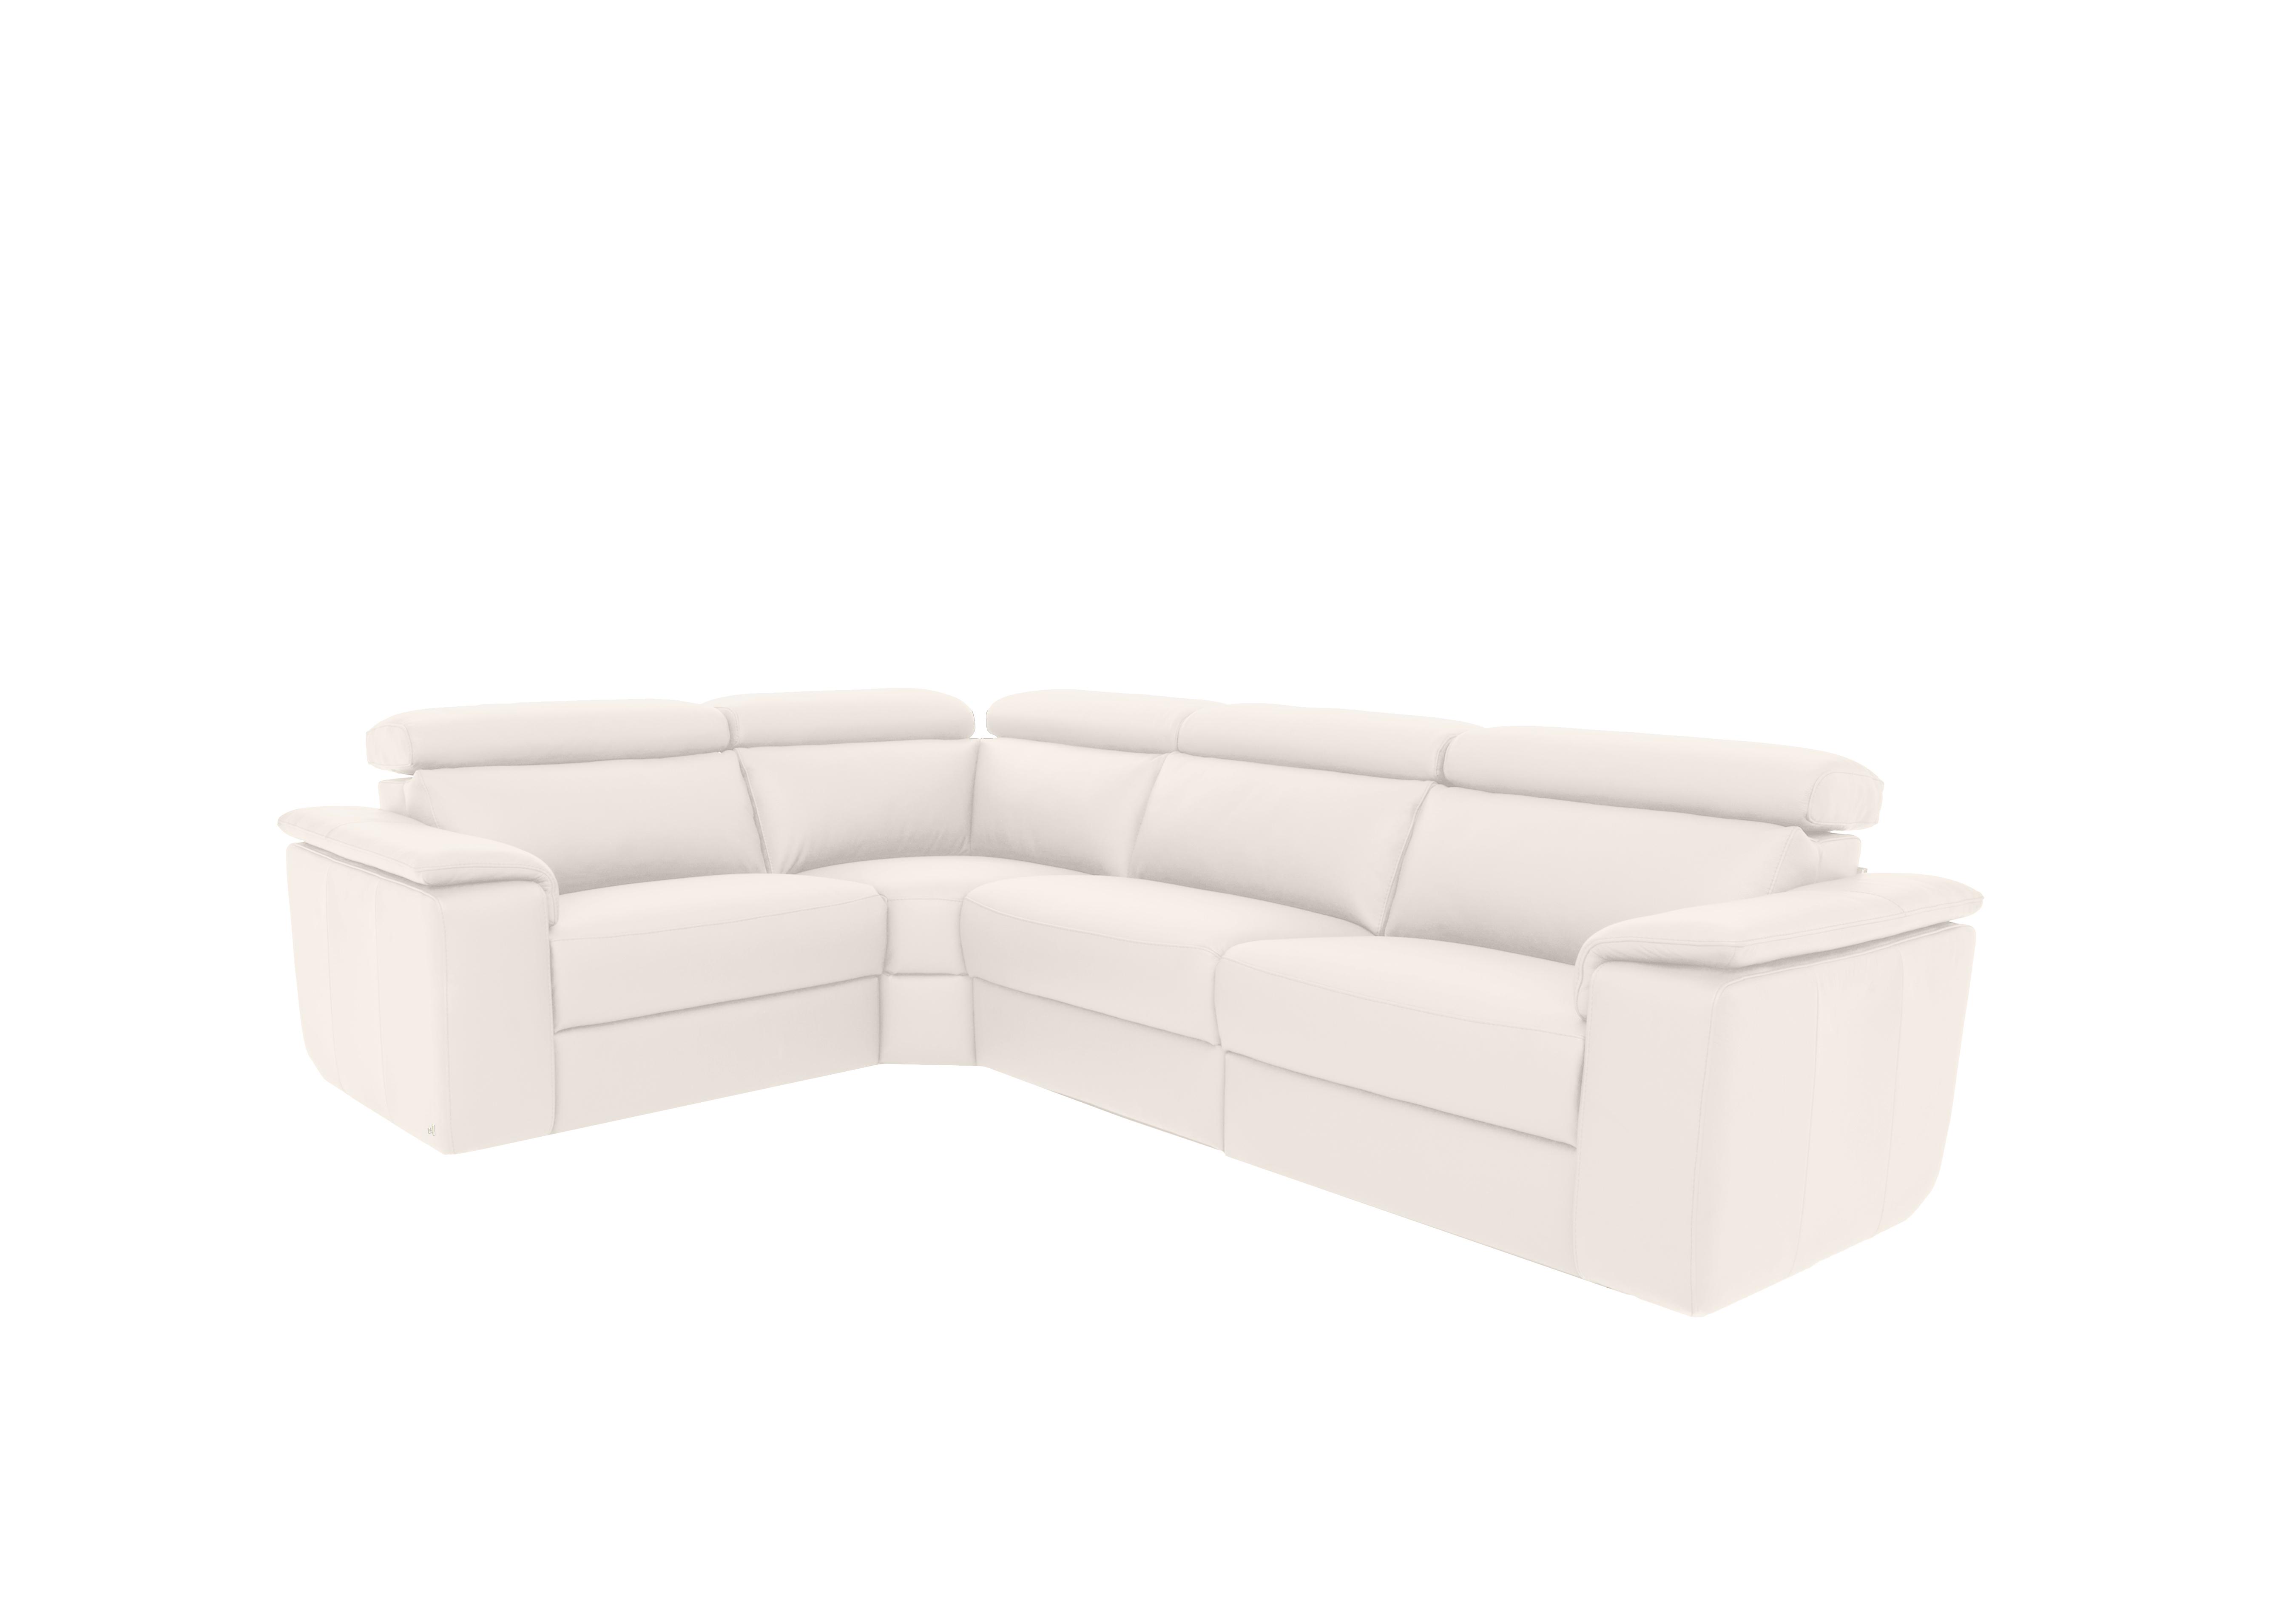 Davide Small Leather Corner Sofa in 370 Torello Bianco Puro on Furniture Village